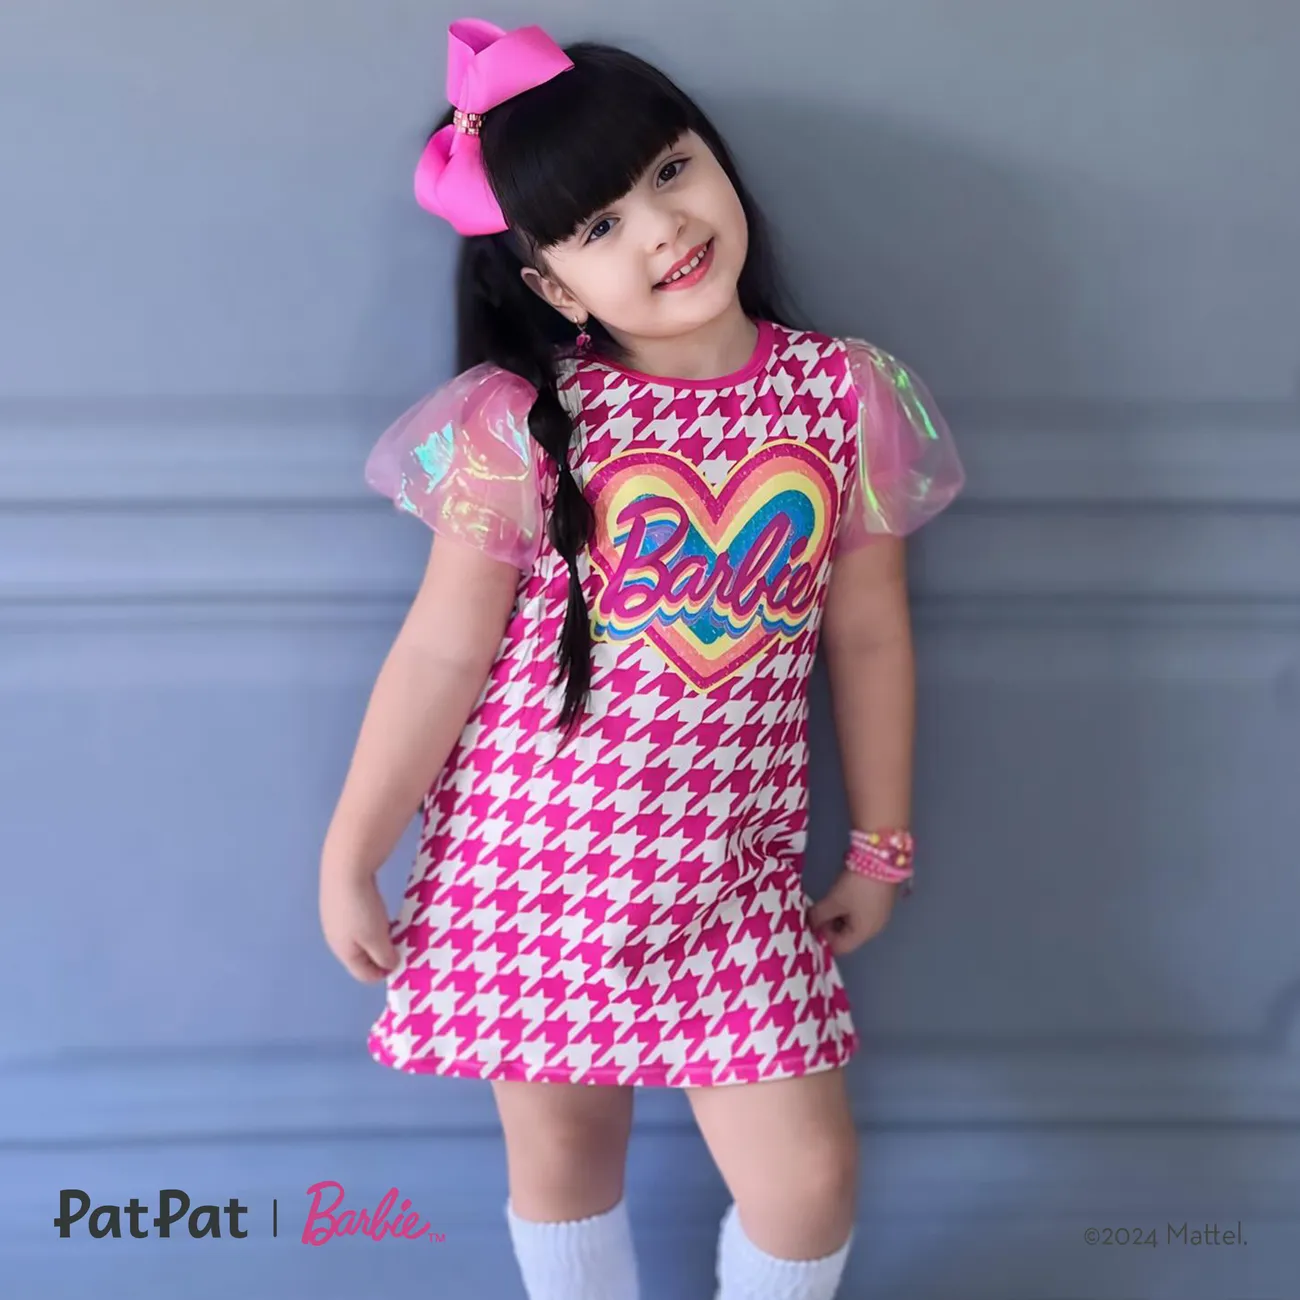 Barbie Fête des Mères IP Fille Couture de tissus Enfantin Robes rose big image 1